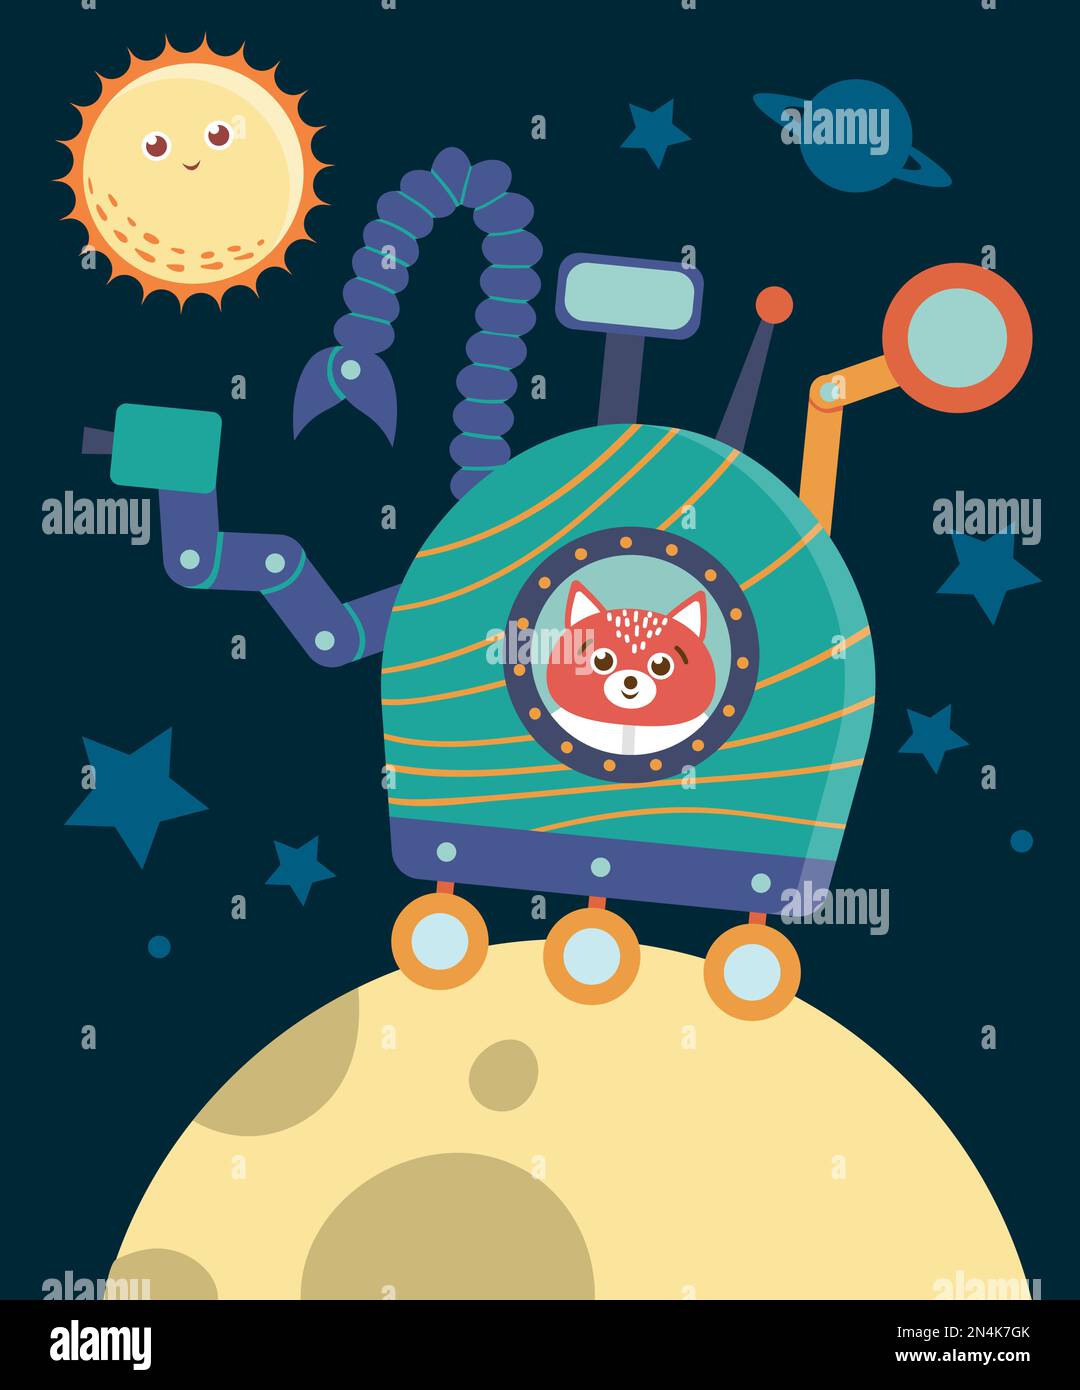 Ein komischer Vektor-Astronautenfuchs im Weltall, der den Mond erforscht. Süße Galaxie-Szene mit Planeten, Sternen, Kosmonauten. Cosmos Illustration für Kinder Stock Vektor